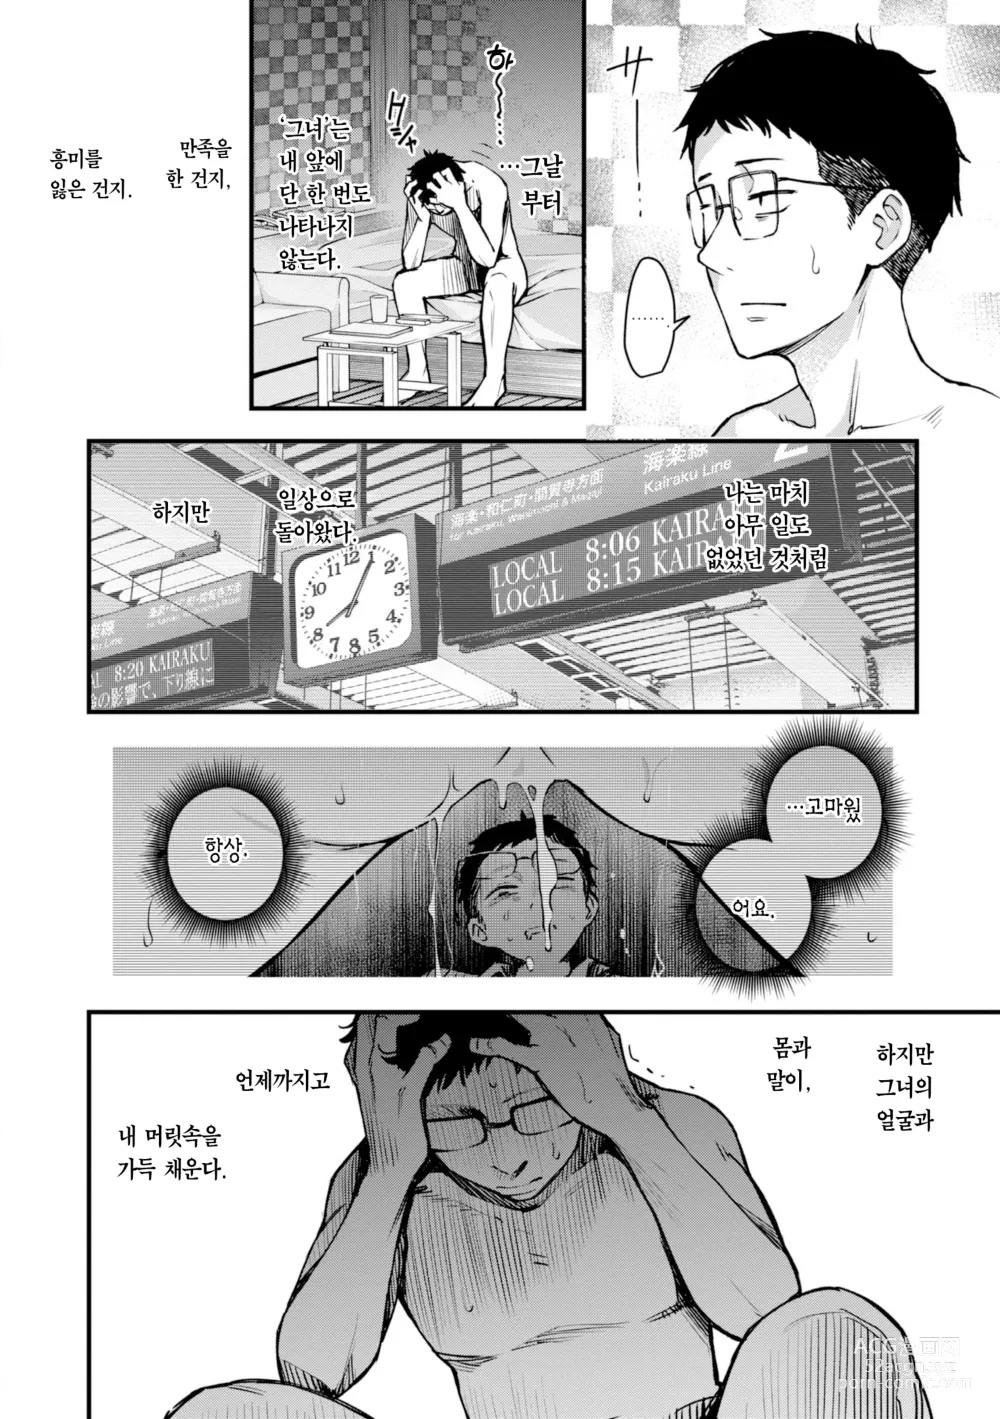 Page 184 of manga 처녀는 발정나면 안 되나요? (decensored)